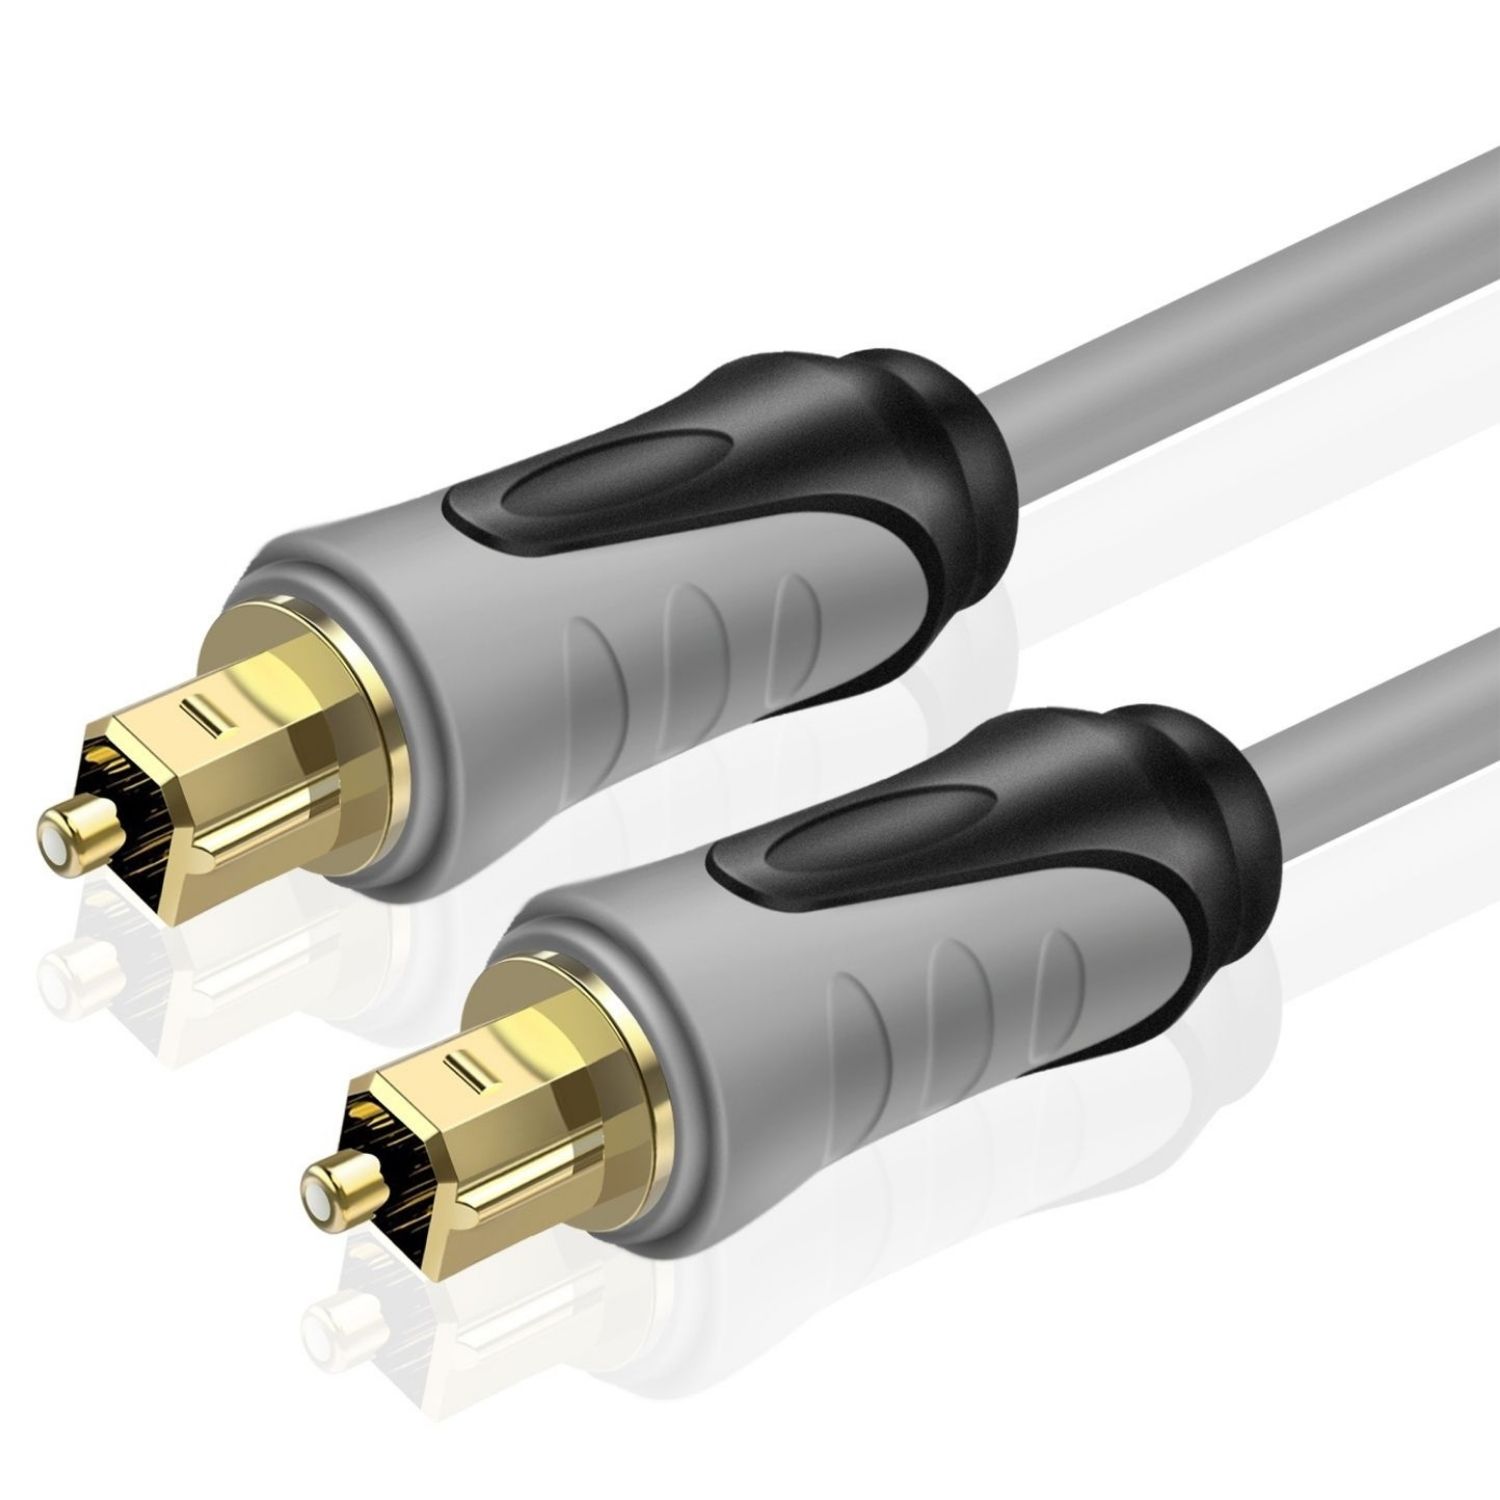 Digital fiber optic cable